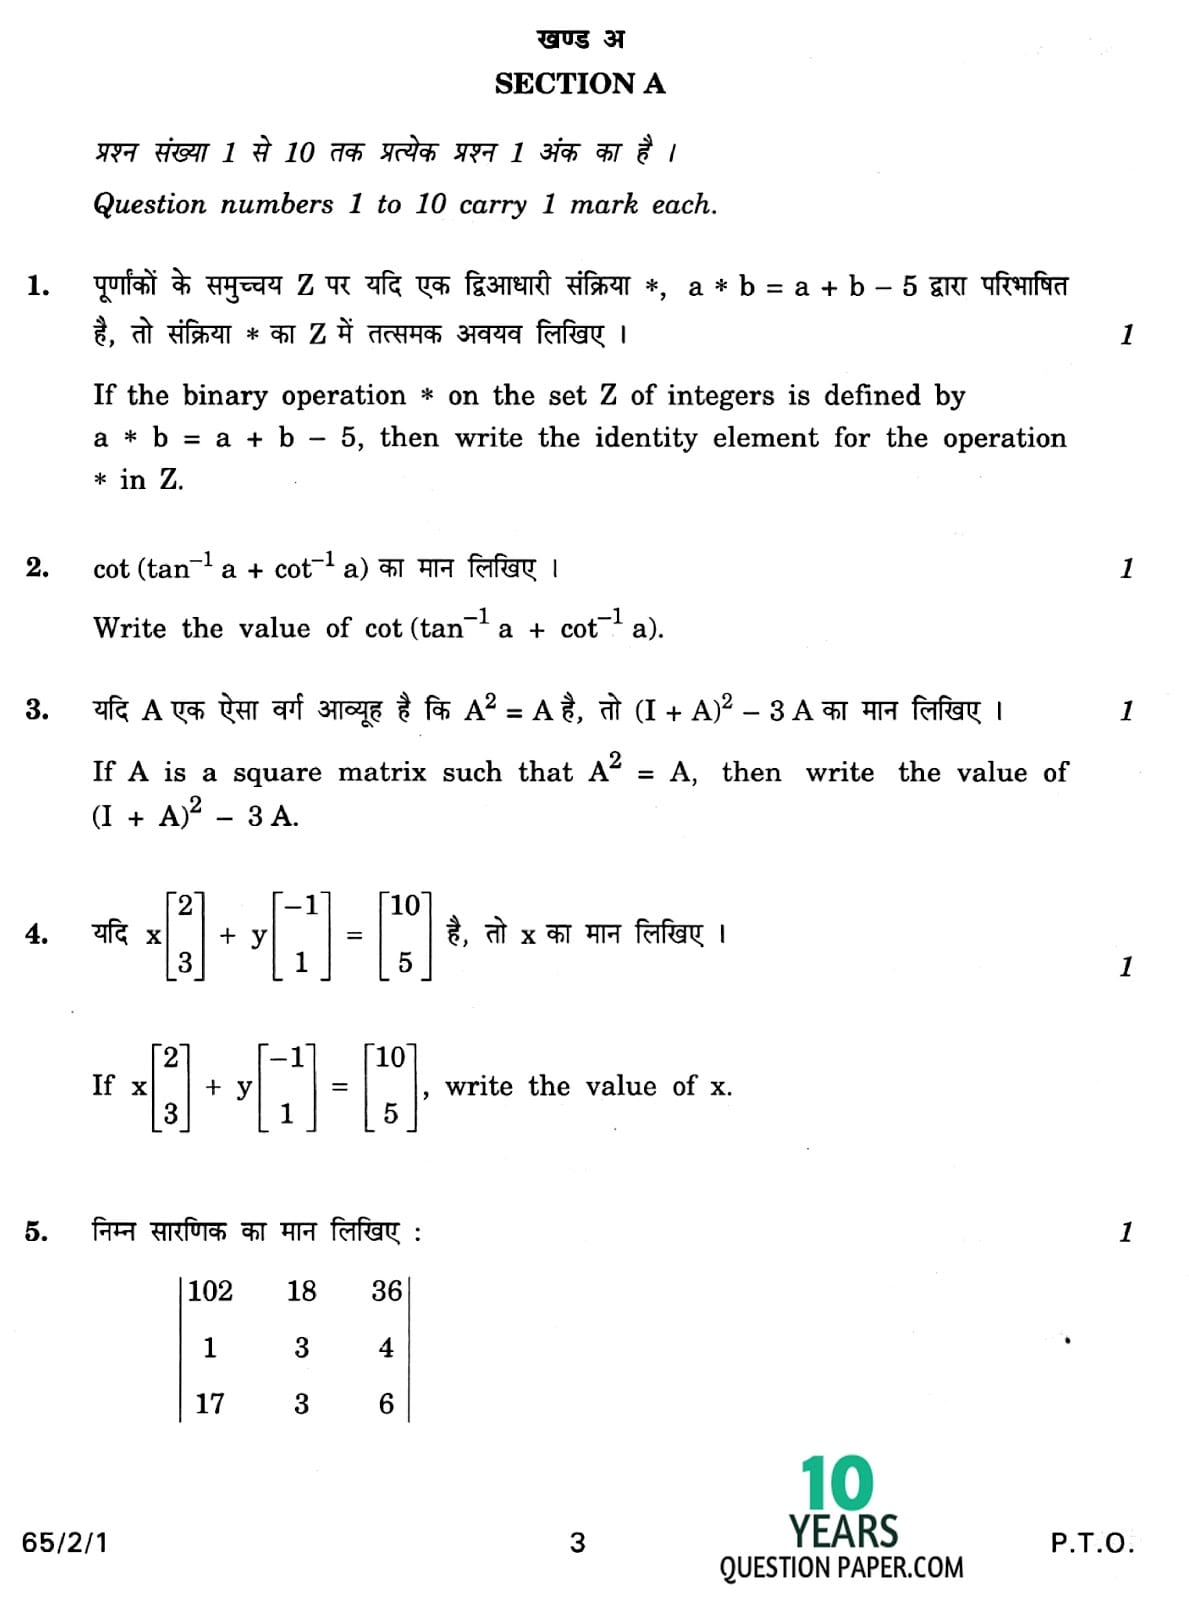 CBSE Class 12 Mathematics 2013 Question Paper